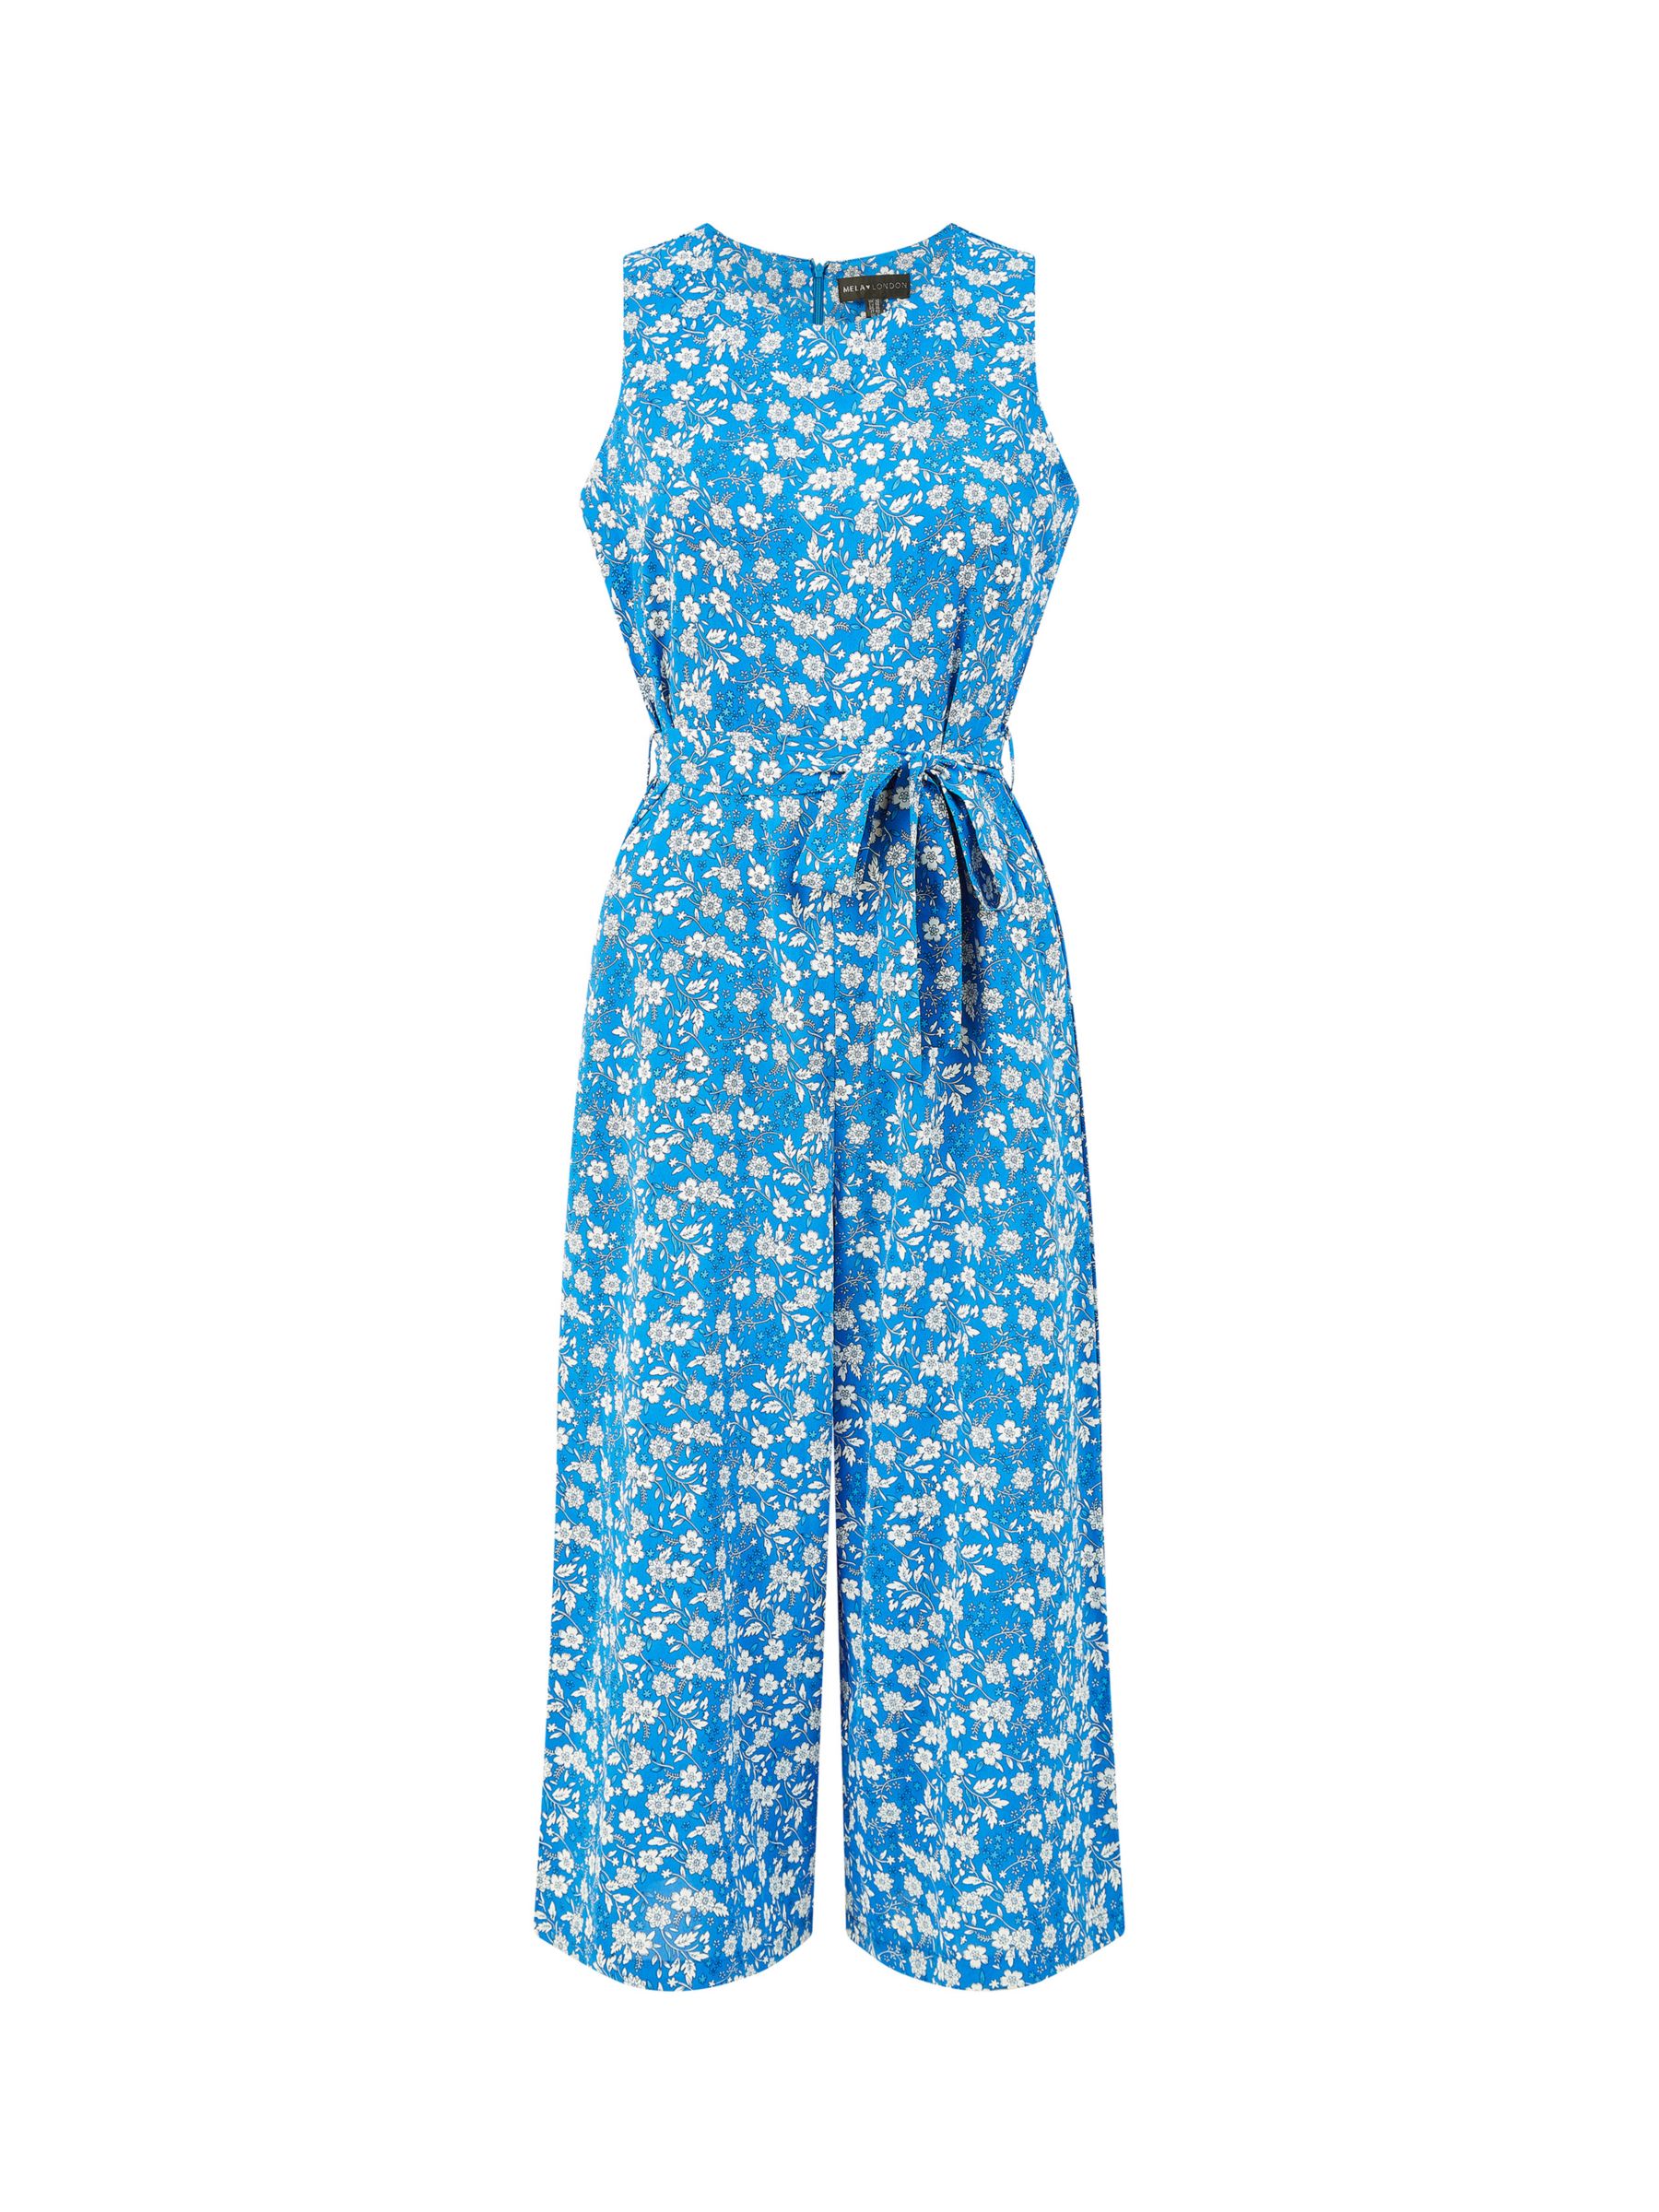 Mela London Ditsy Print Culotte Jumpsuit, Blue, 6